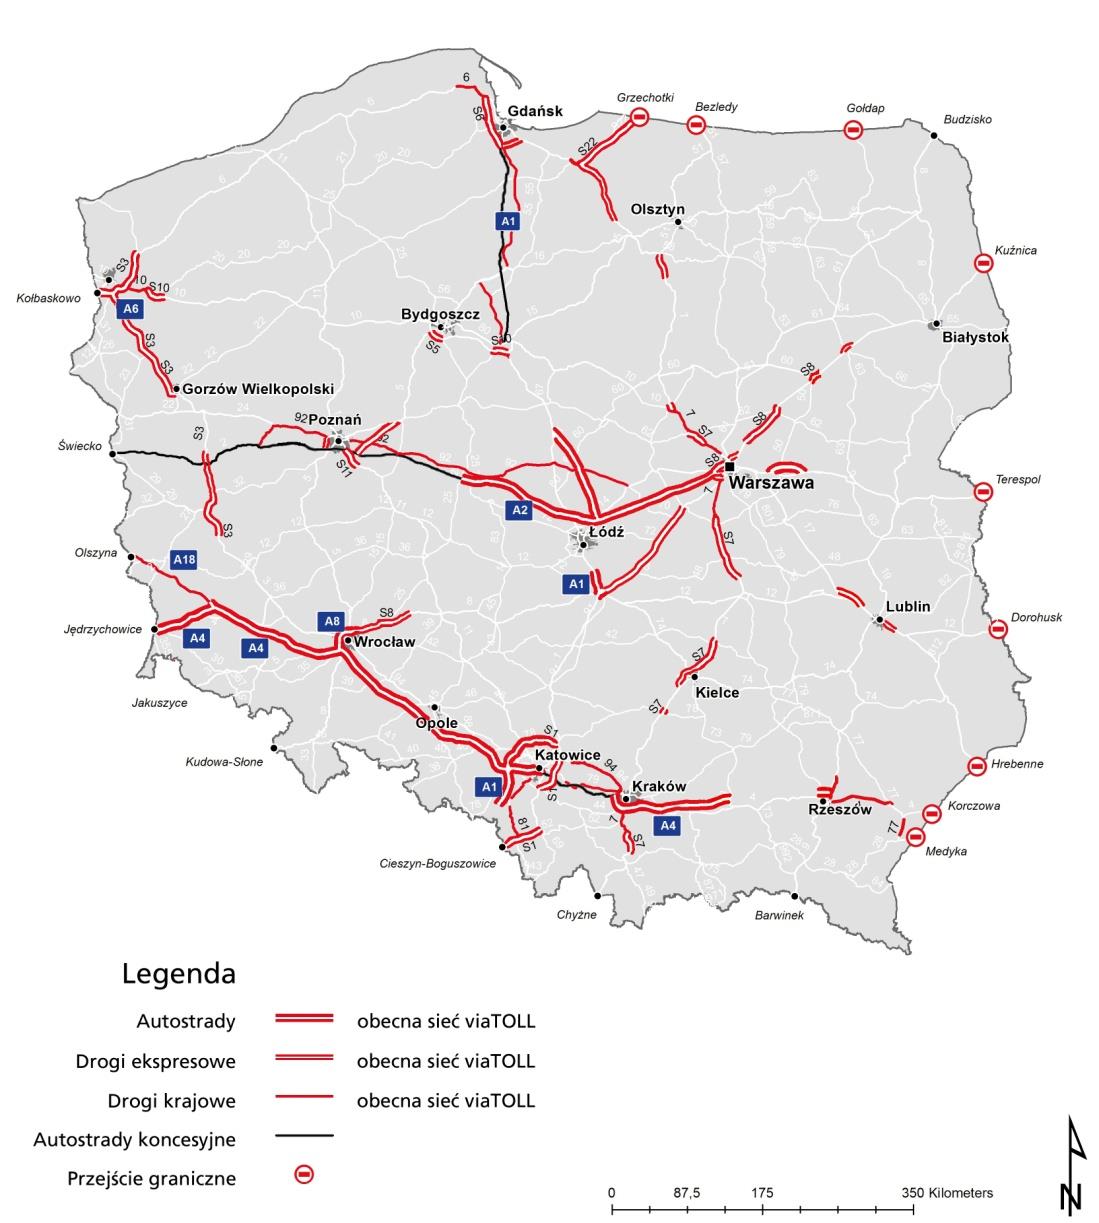 SIEĆ DRÓG PŁATNYCH SYSTEMU viatoll 2653 km dróg płatnych w całej Polsce: 797 km